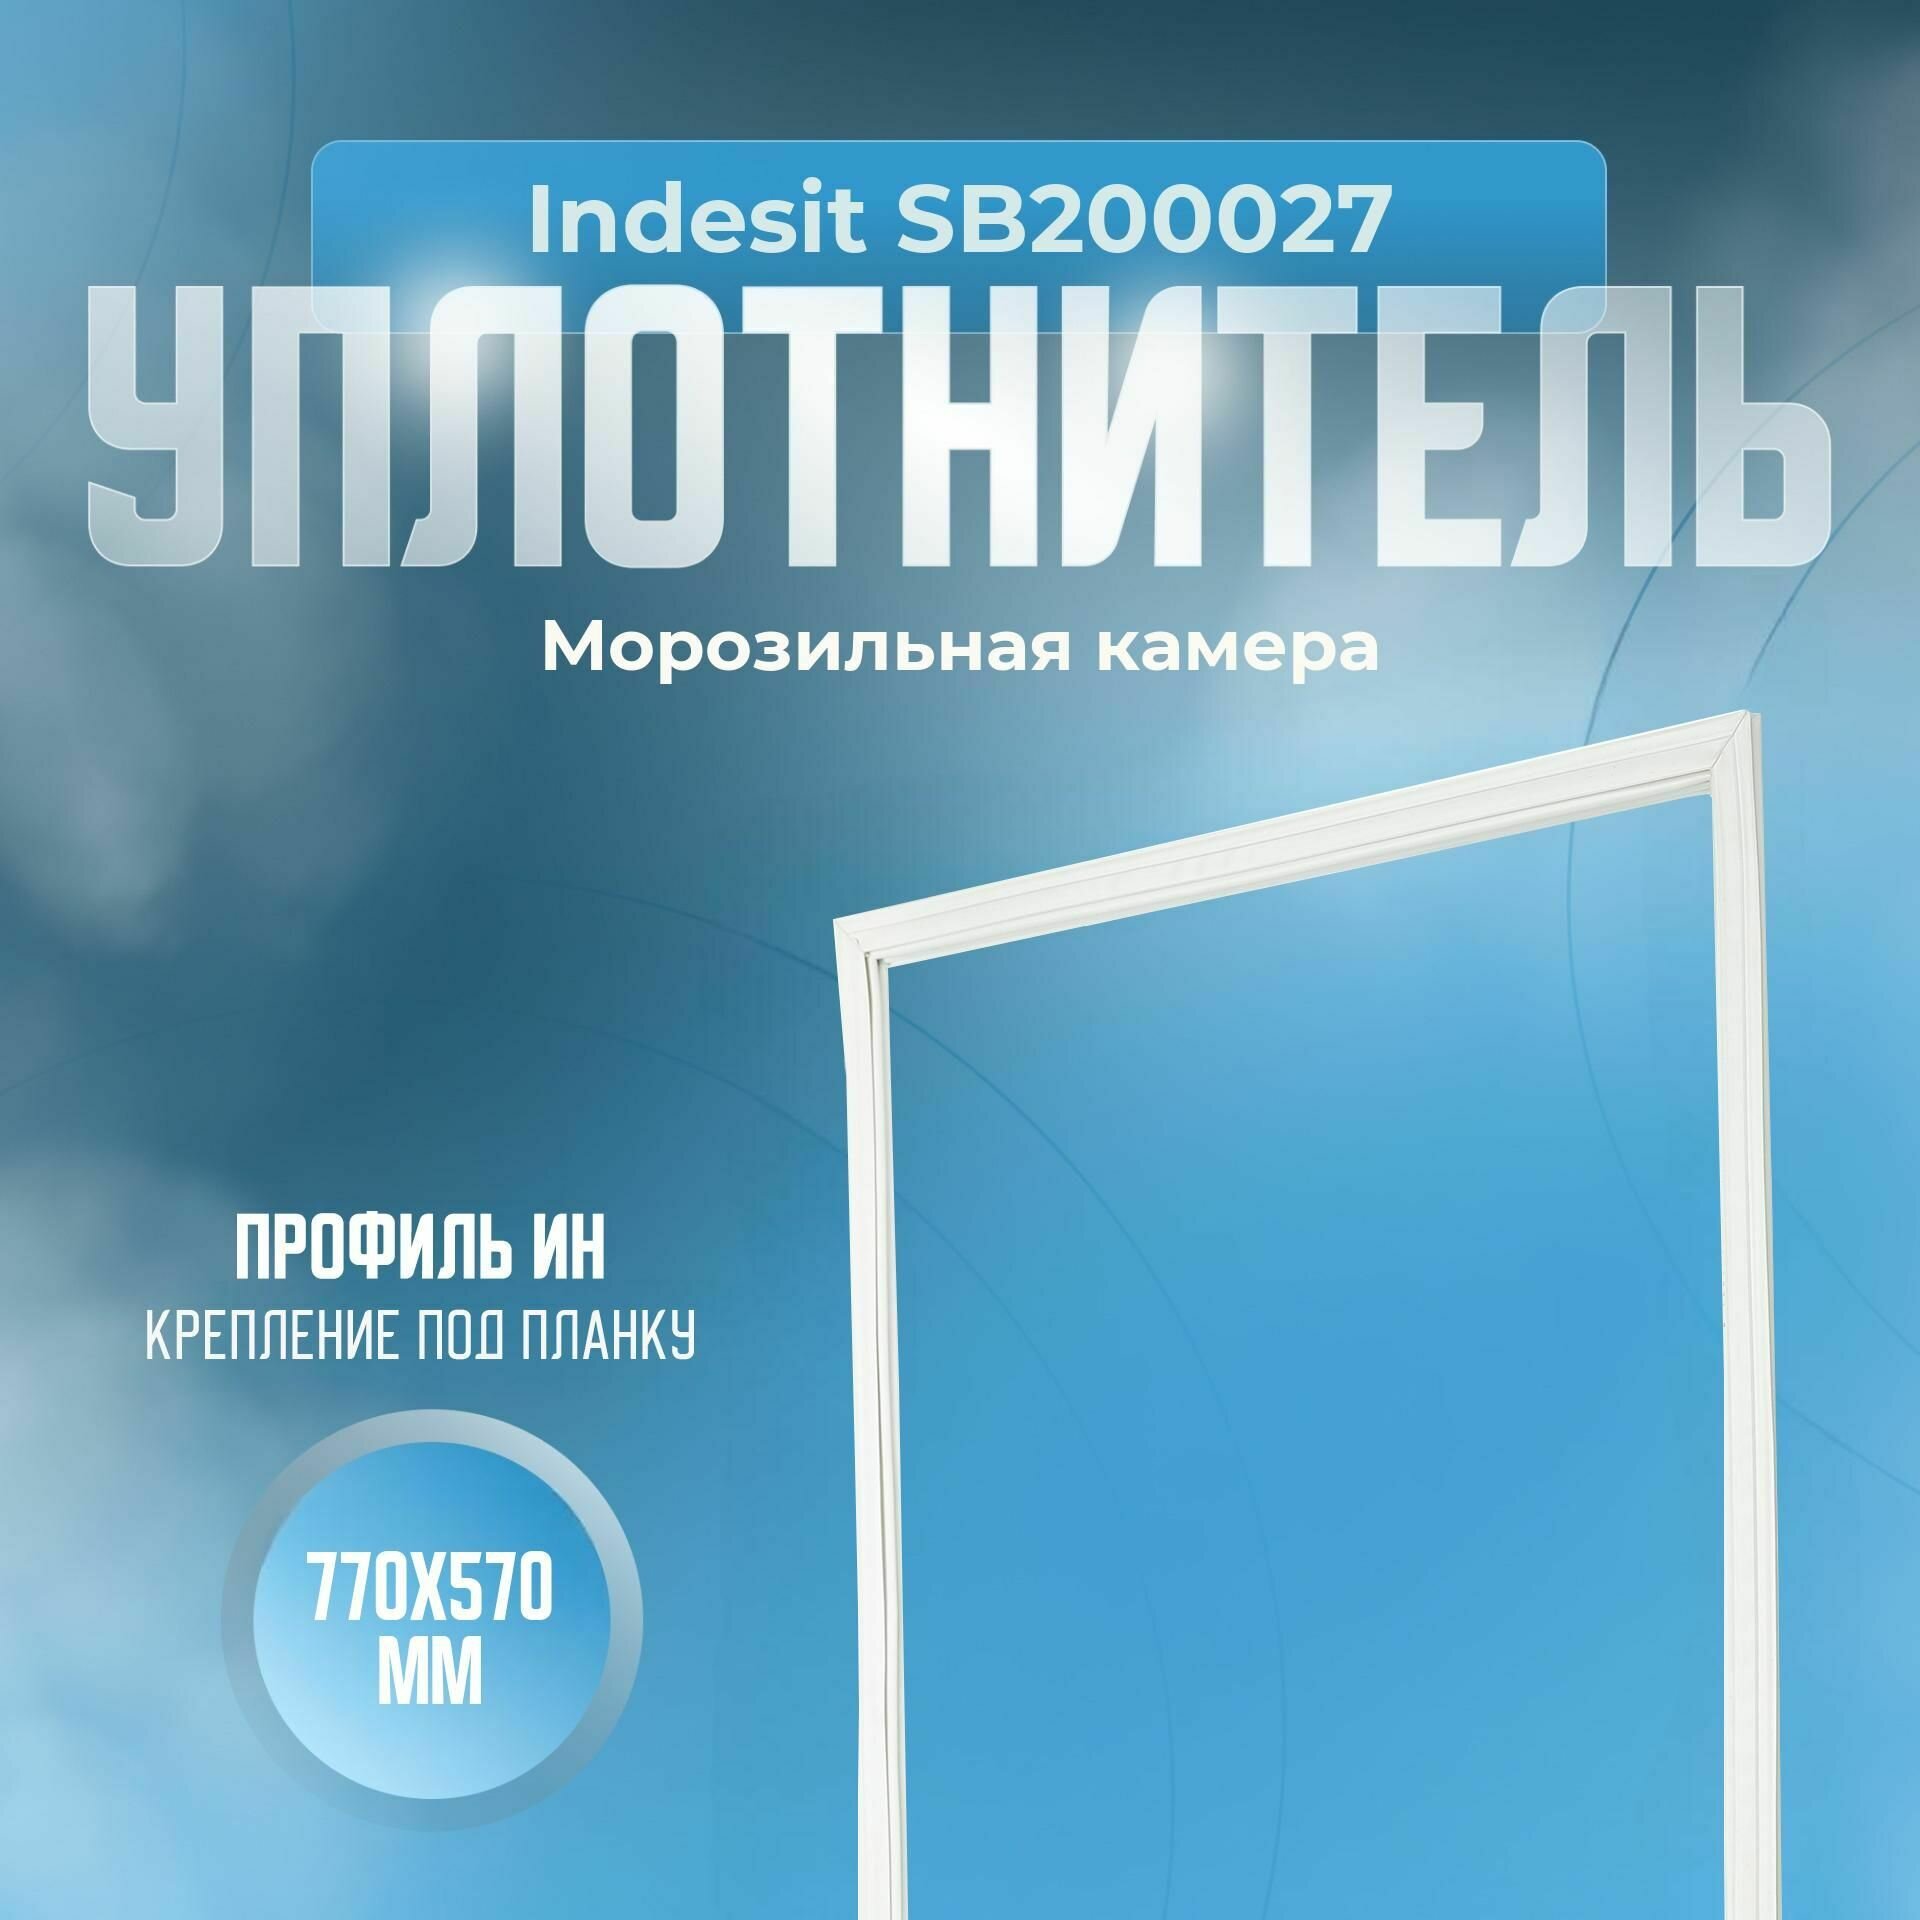 Уплотнитель Indesit SB200027. м. к, Размер - 770х570 мм. ИН